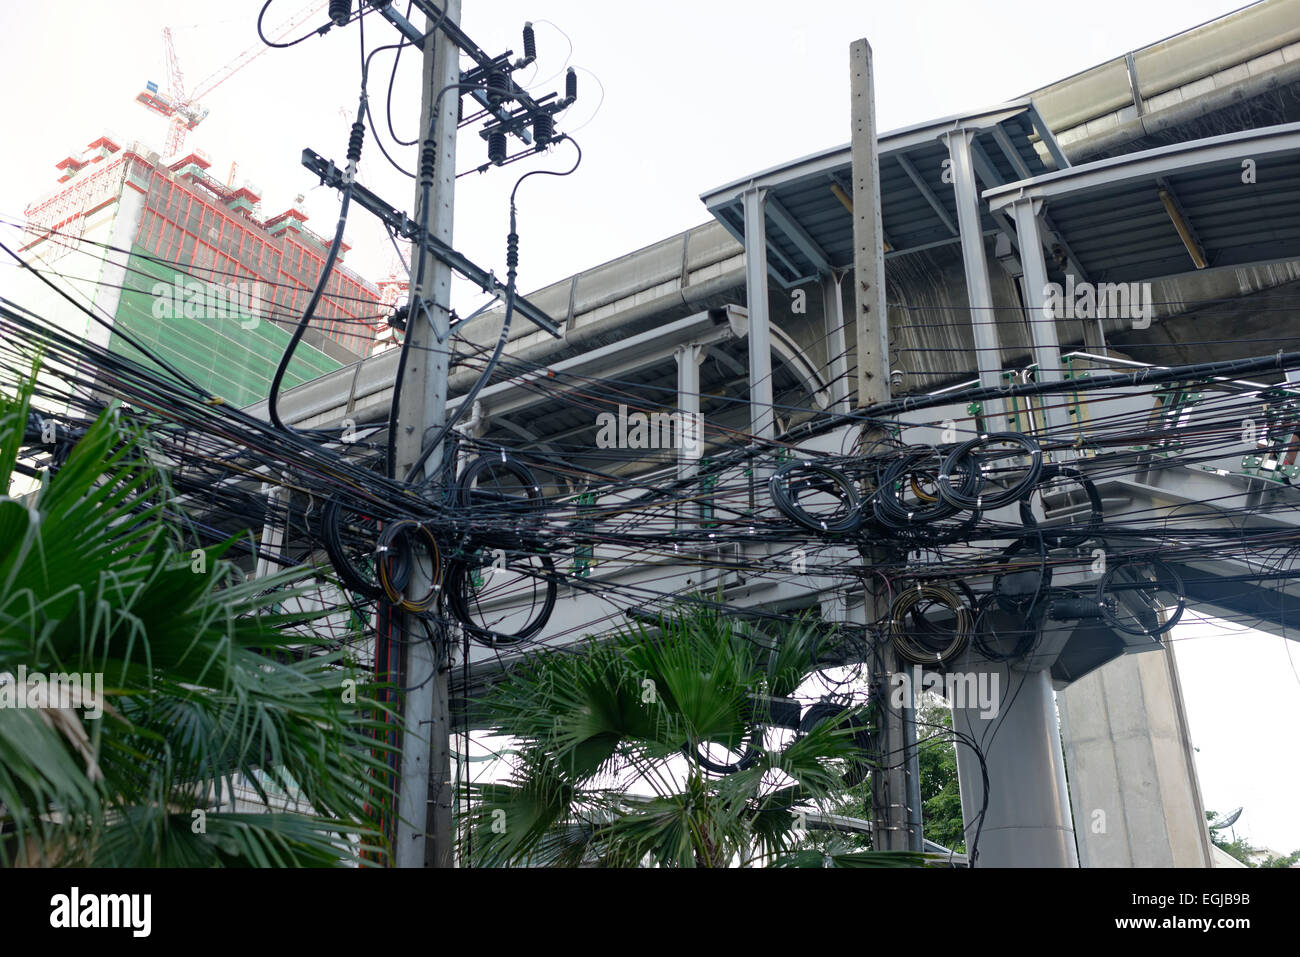 Désordre chaotique des câbles de télécommunication électriques à Bangkok Thailande Asie Banque D'Images